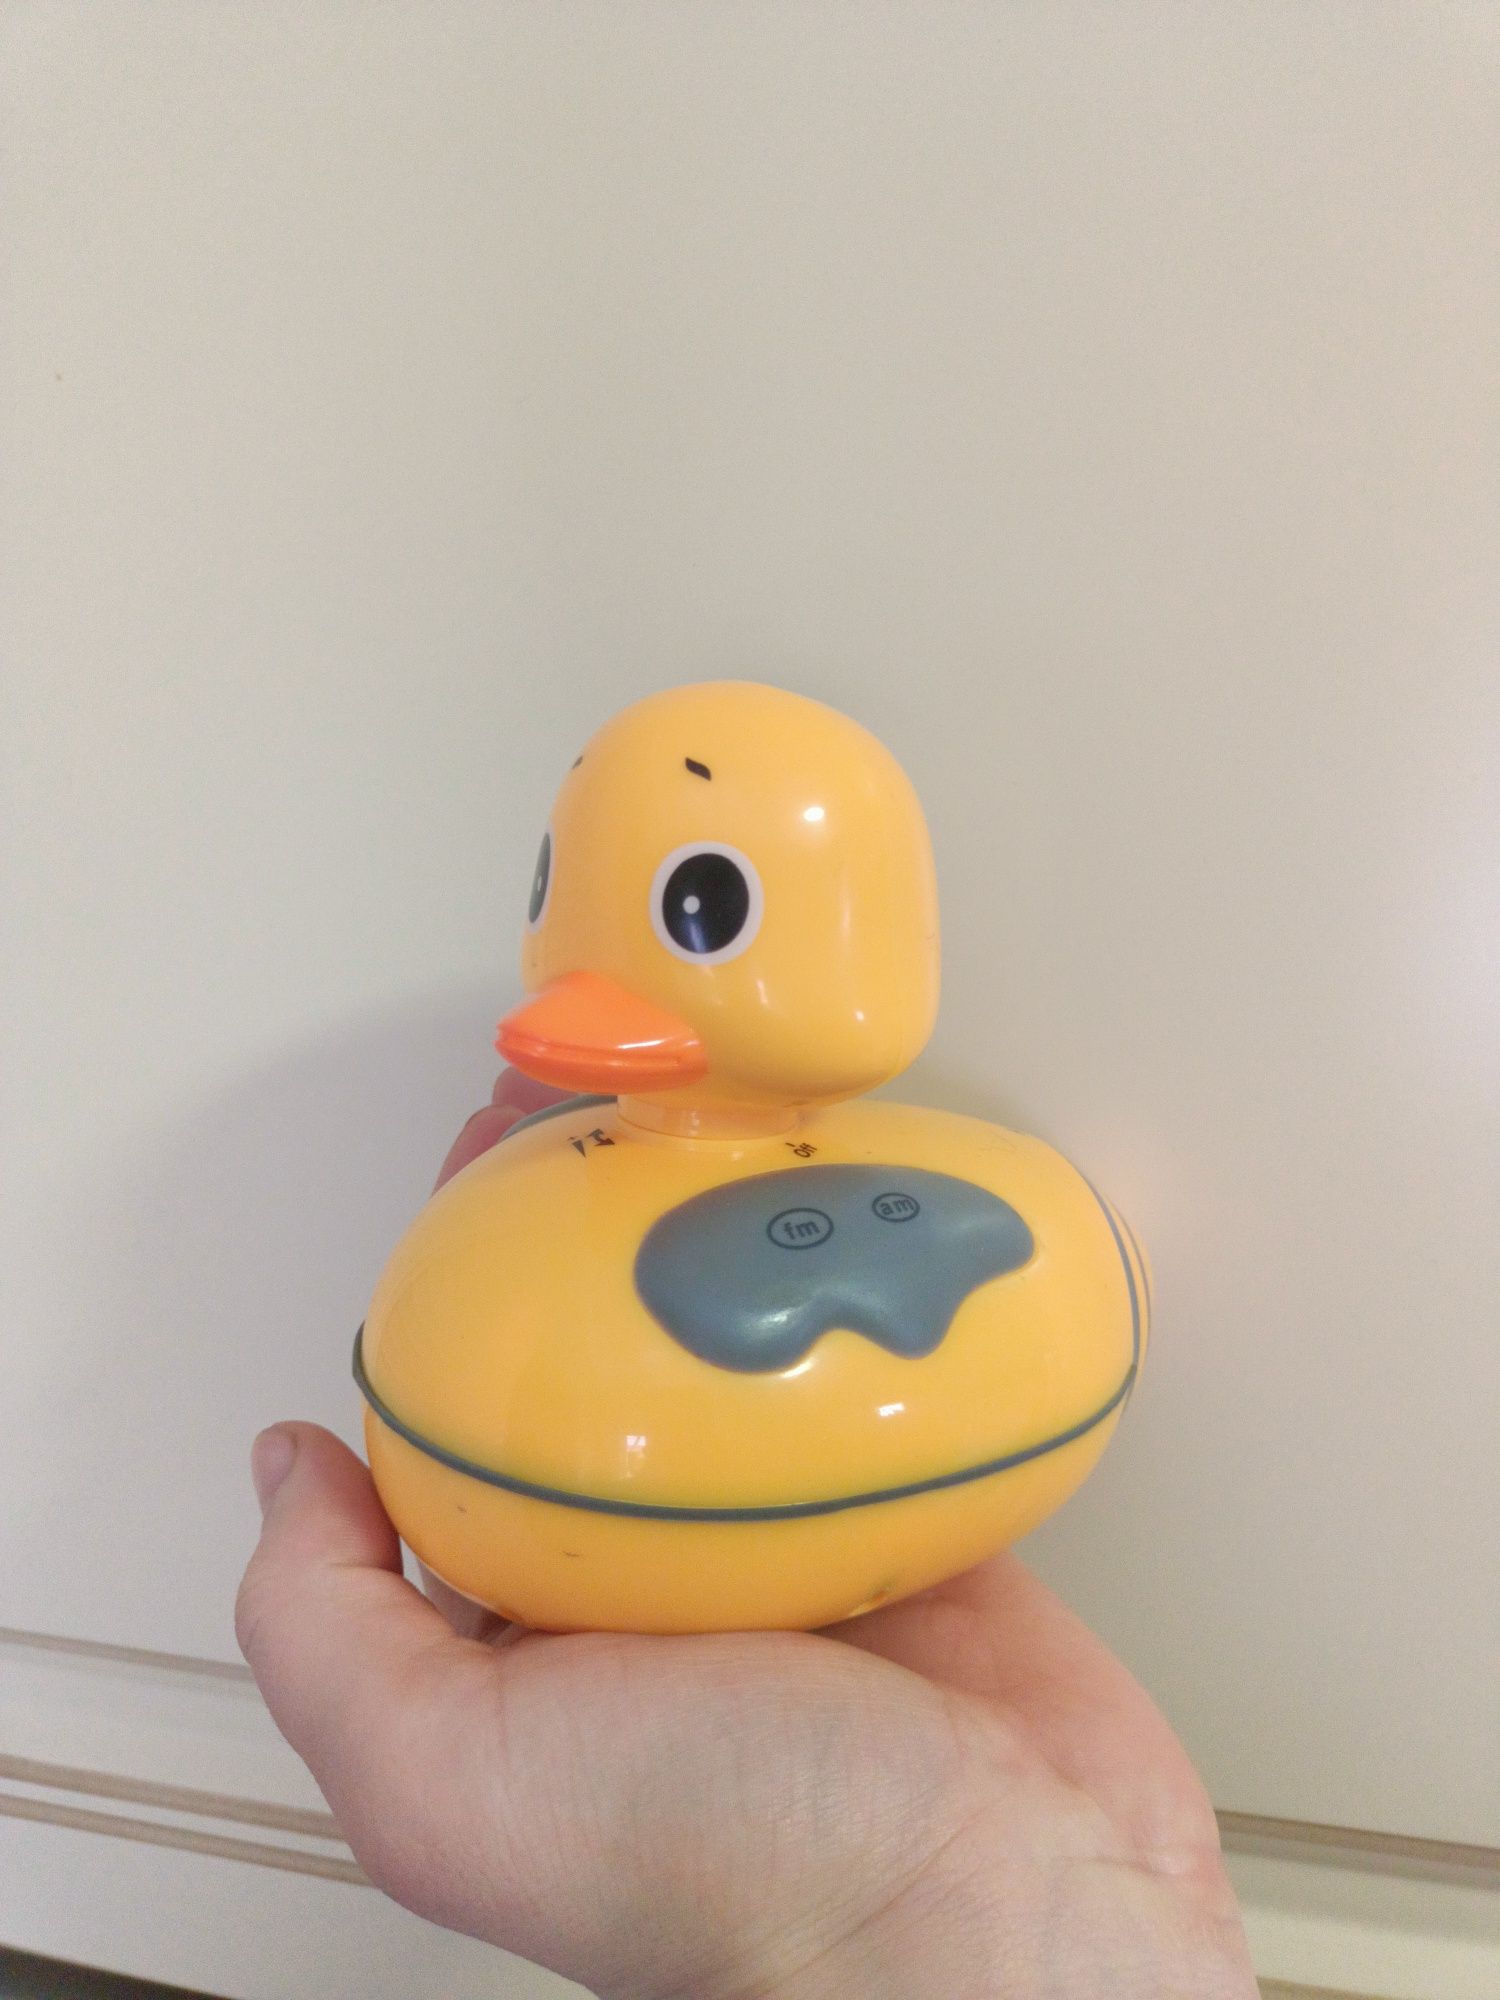 Іграшка з FM AM рідіо. Не тоне у воді. Для басейну або ванни